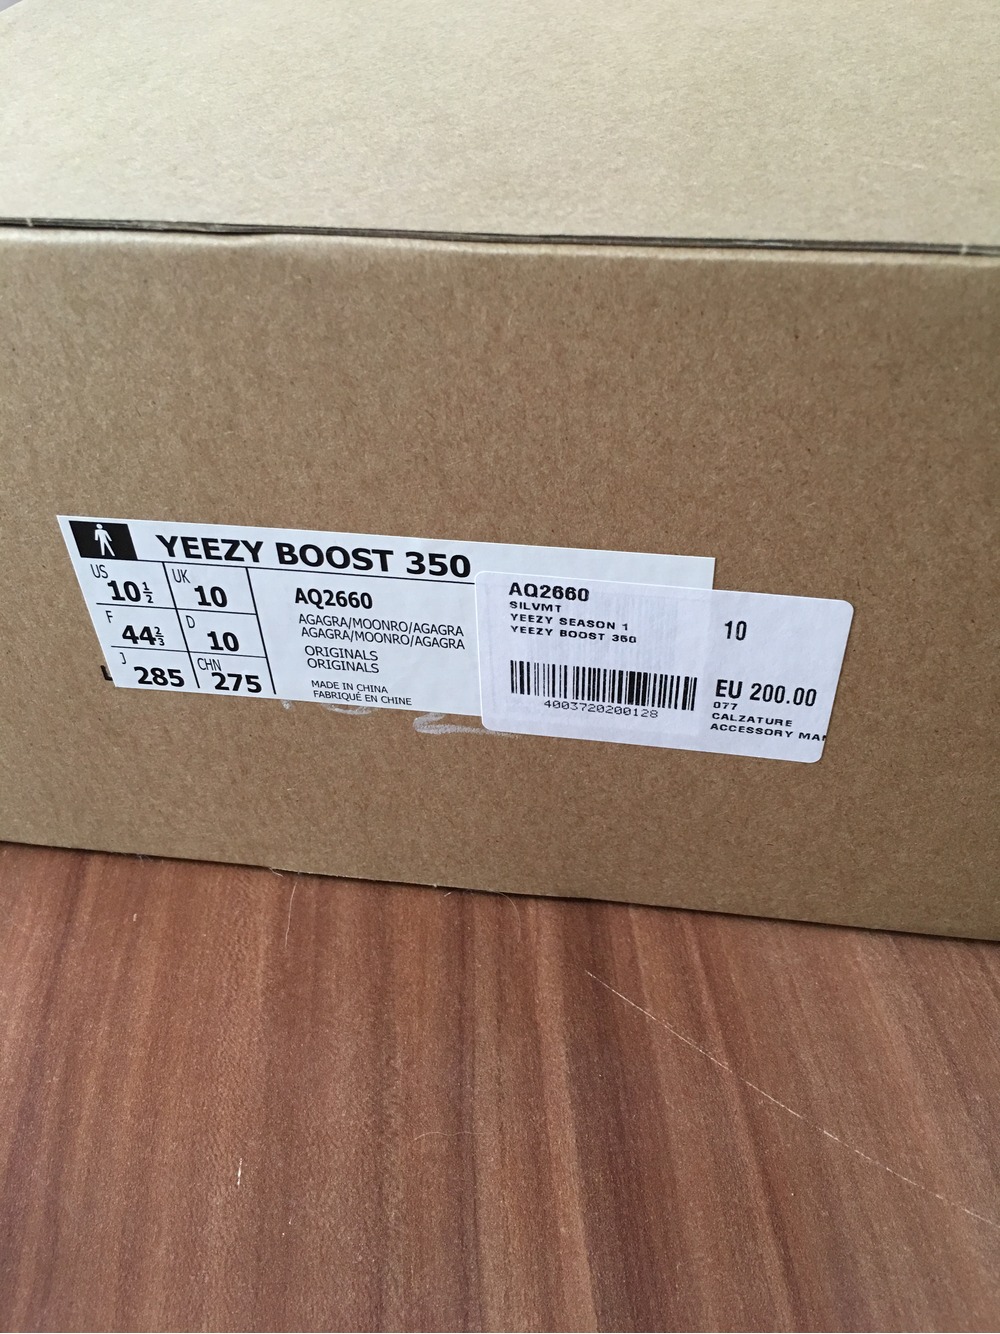 BUY Adidas Yeezy Boost 350 Moonrock Marketplace